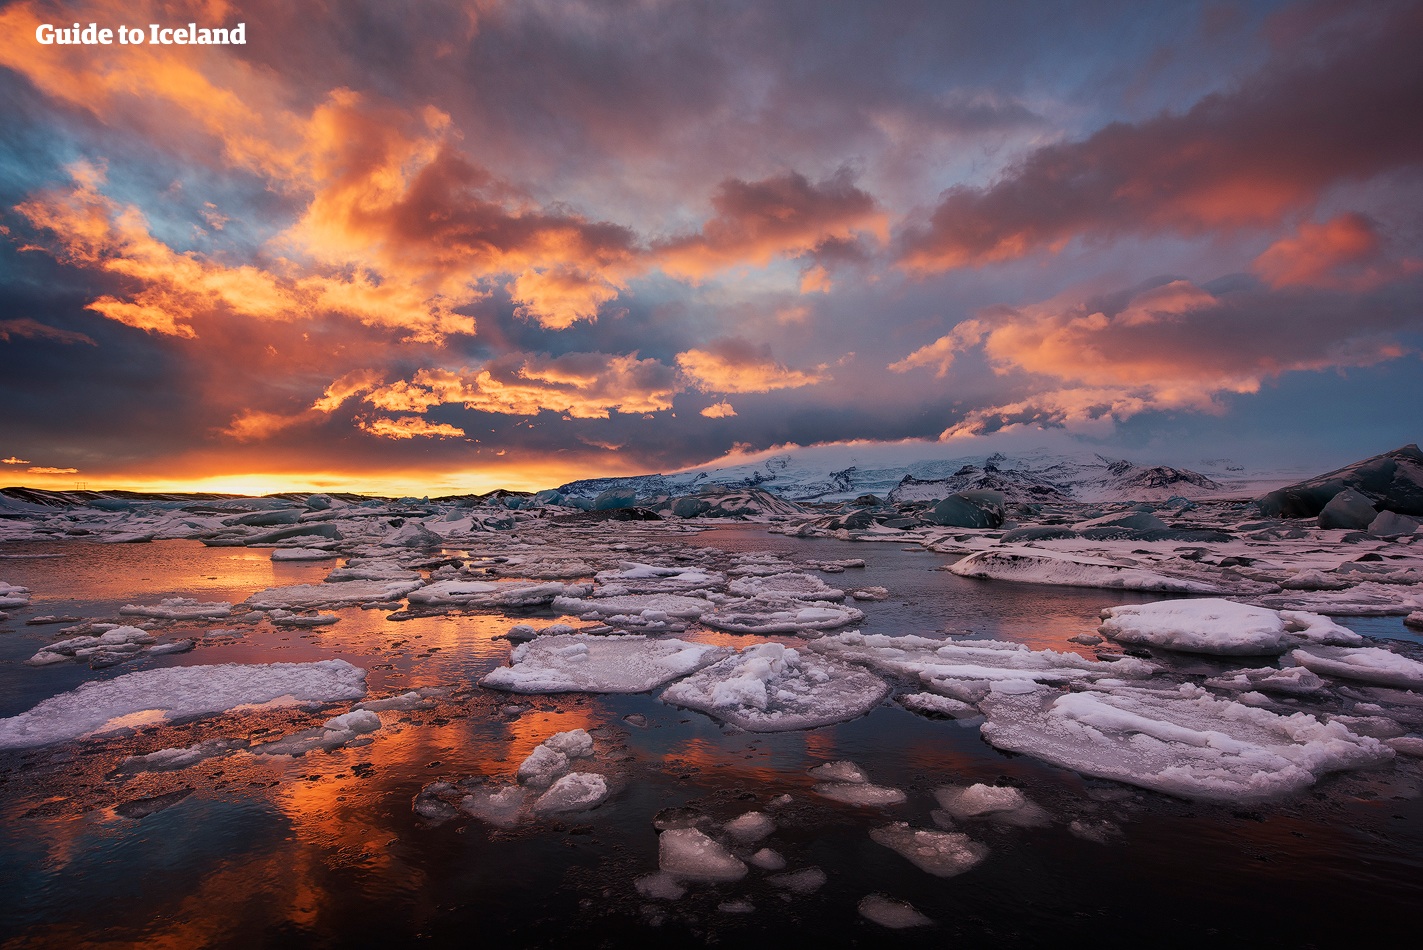 El sol de medianoche ofrece infinitas oportunidades para explorar las muchas maravillas que se encuentran en la laguna glaciar Jökulsárlón, un destino en el sureste de Islandia.